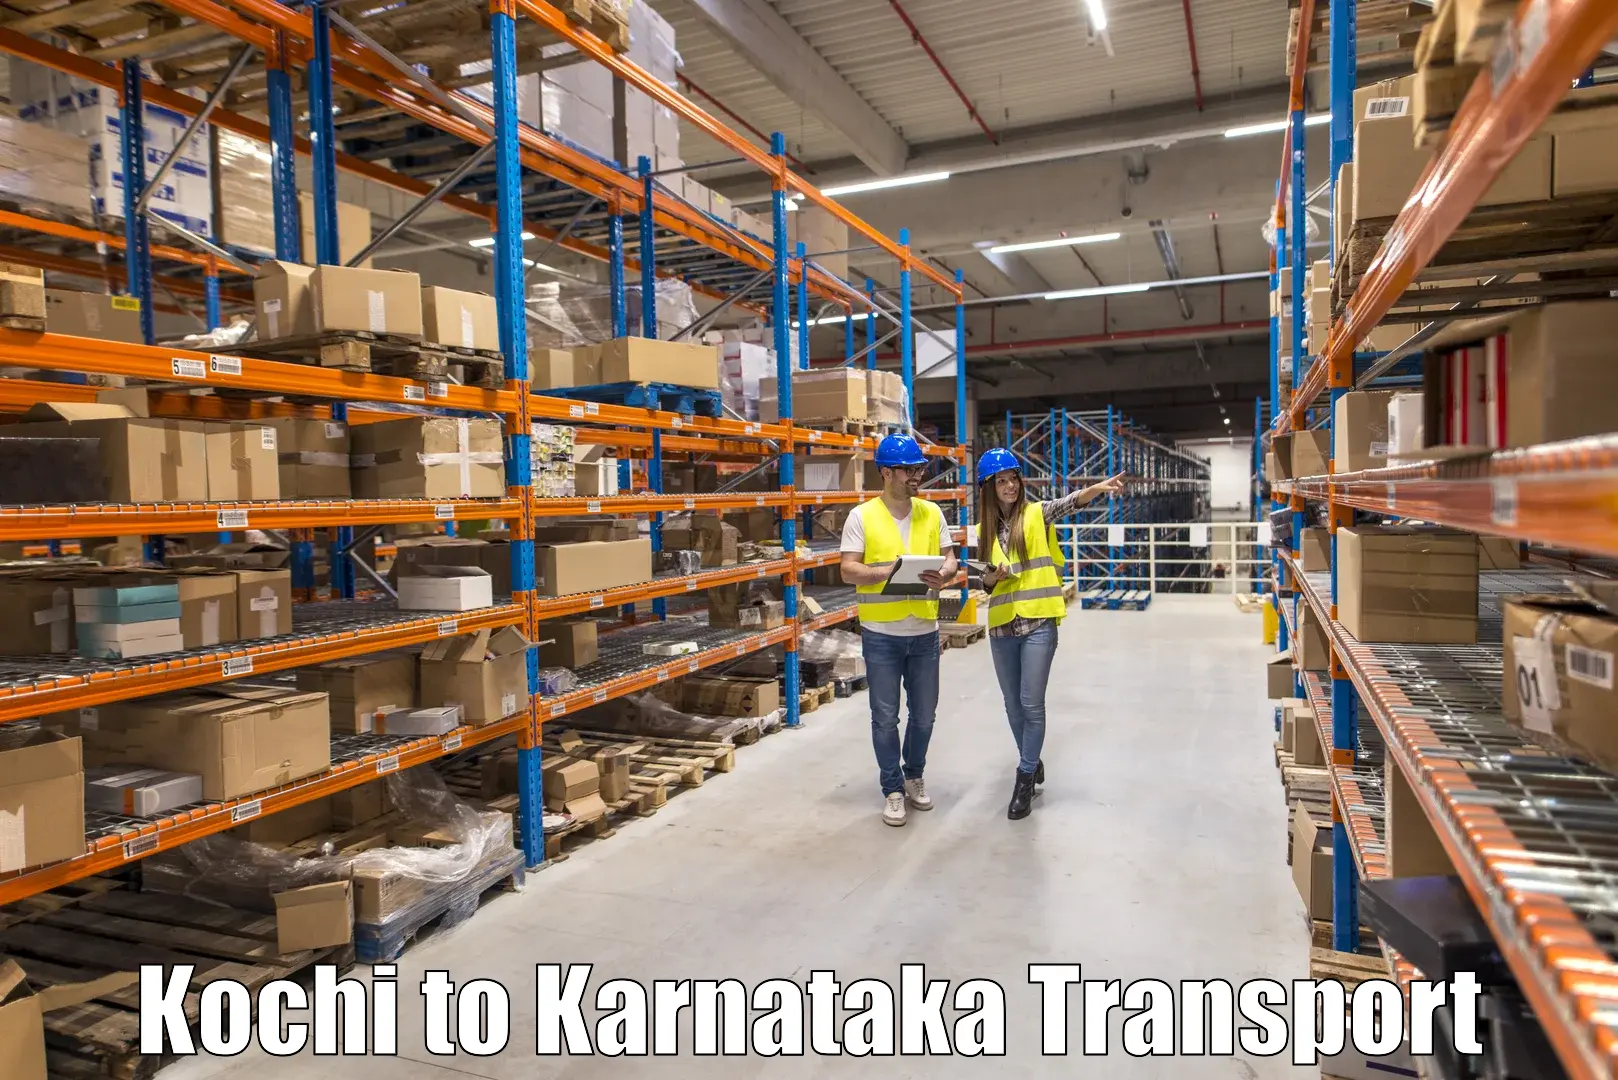 Online transport booking Kochi to Kalaghatgi